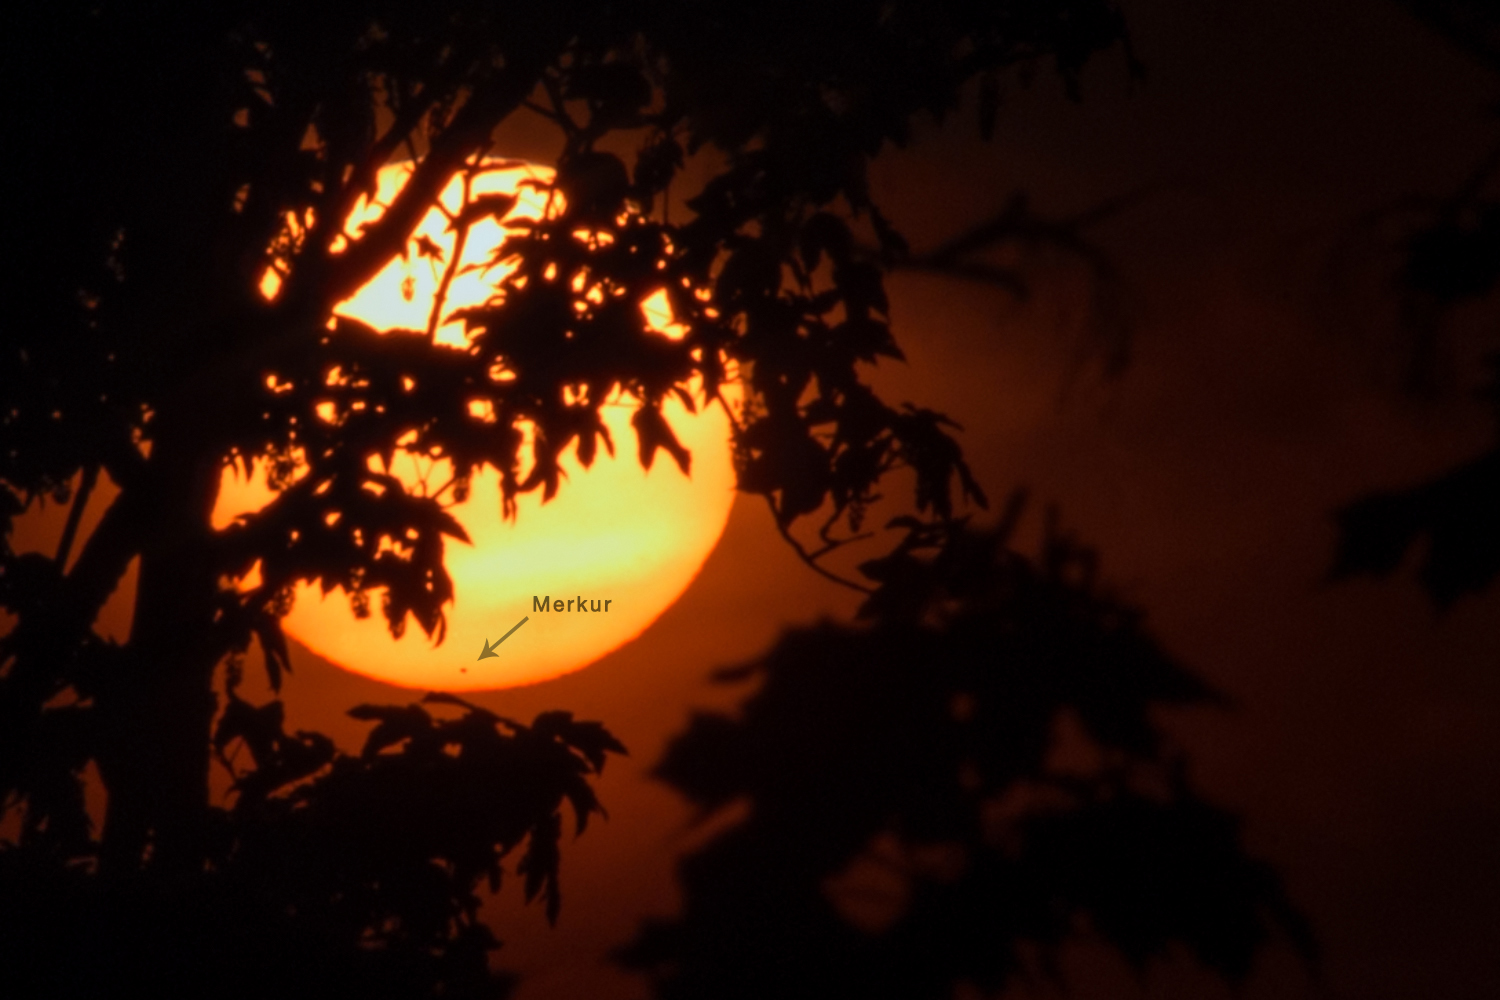 Západ Slunce s Merkurem 9. května 2016 mezi stromy. Foto: Petr Horálek